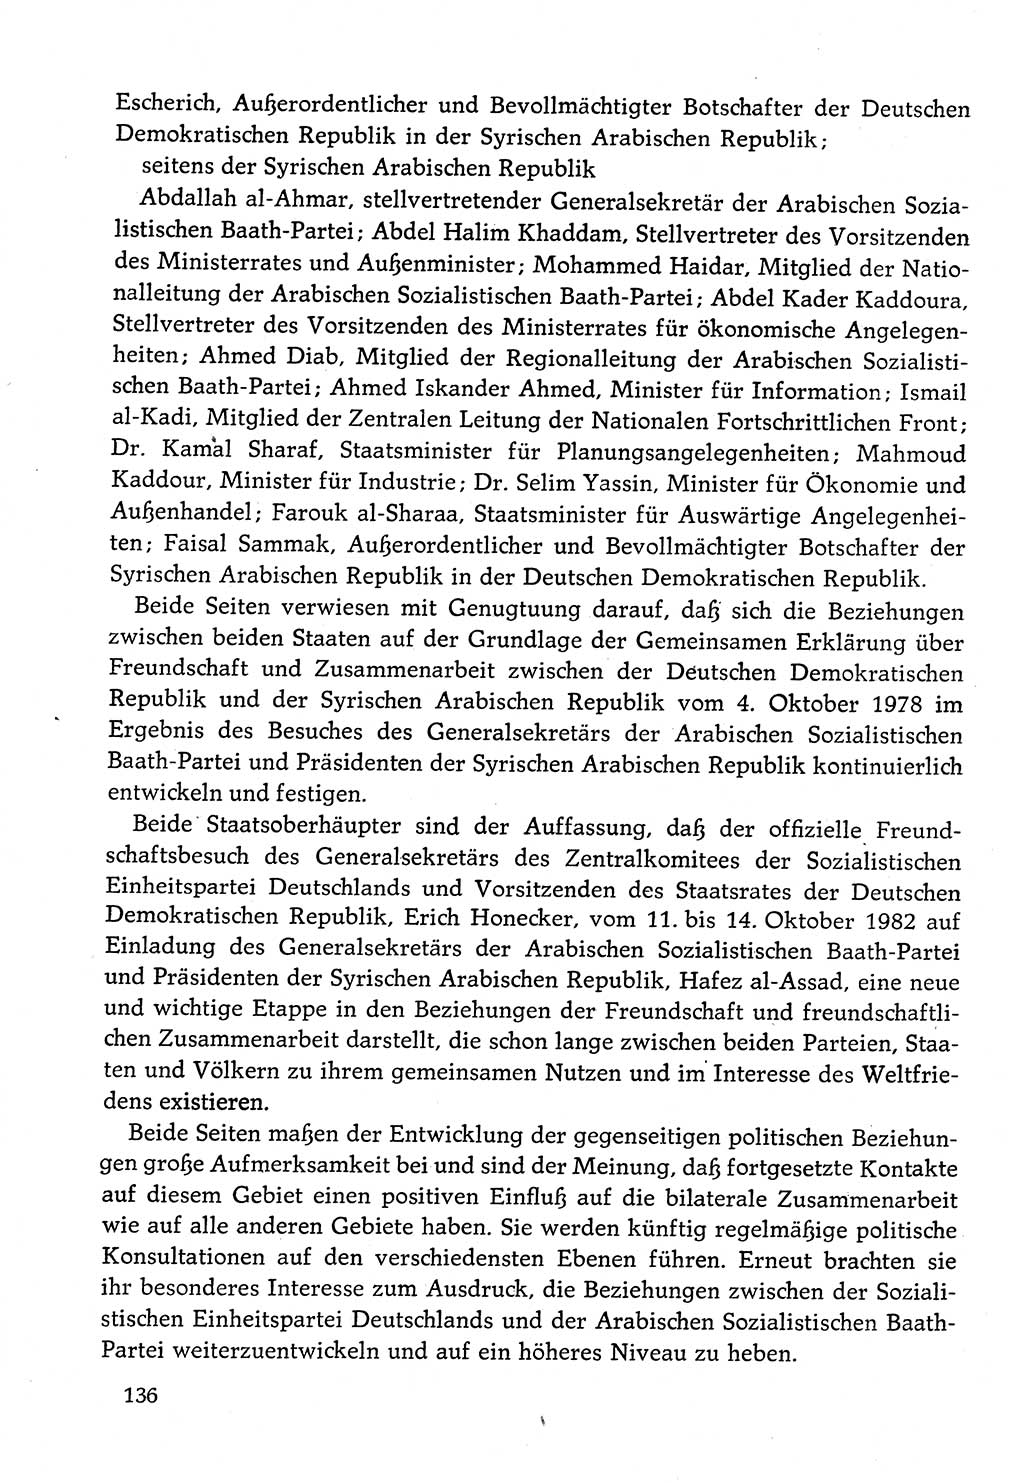 Dokumente der Sozialistischen Einheitspartei Deutschlands (SED) [Deutsche Demokratische Republik (DDR)] 1982-1983, Seite 136 (Dok. SED DDR 1982-1983, S. 136)